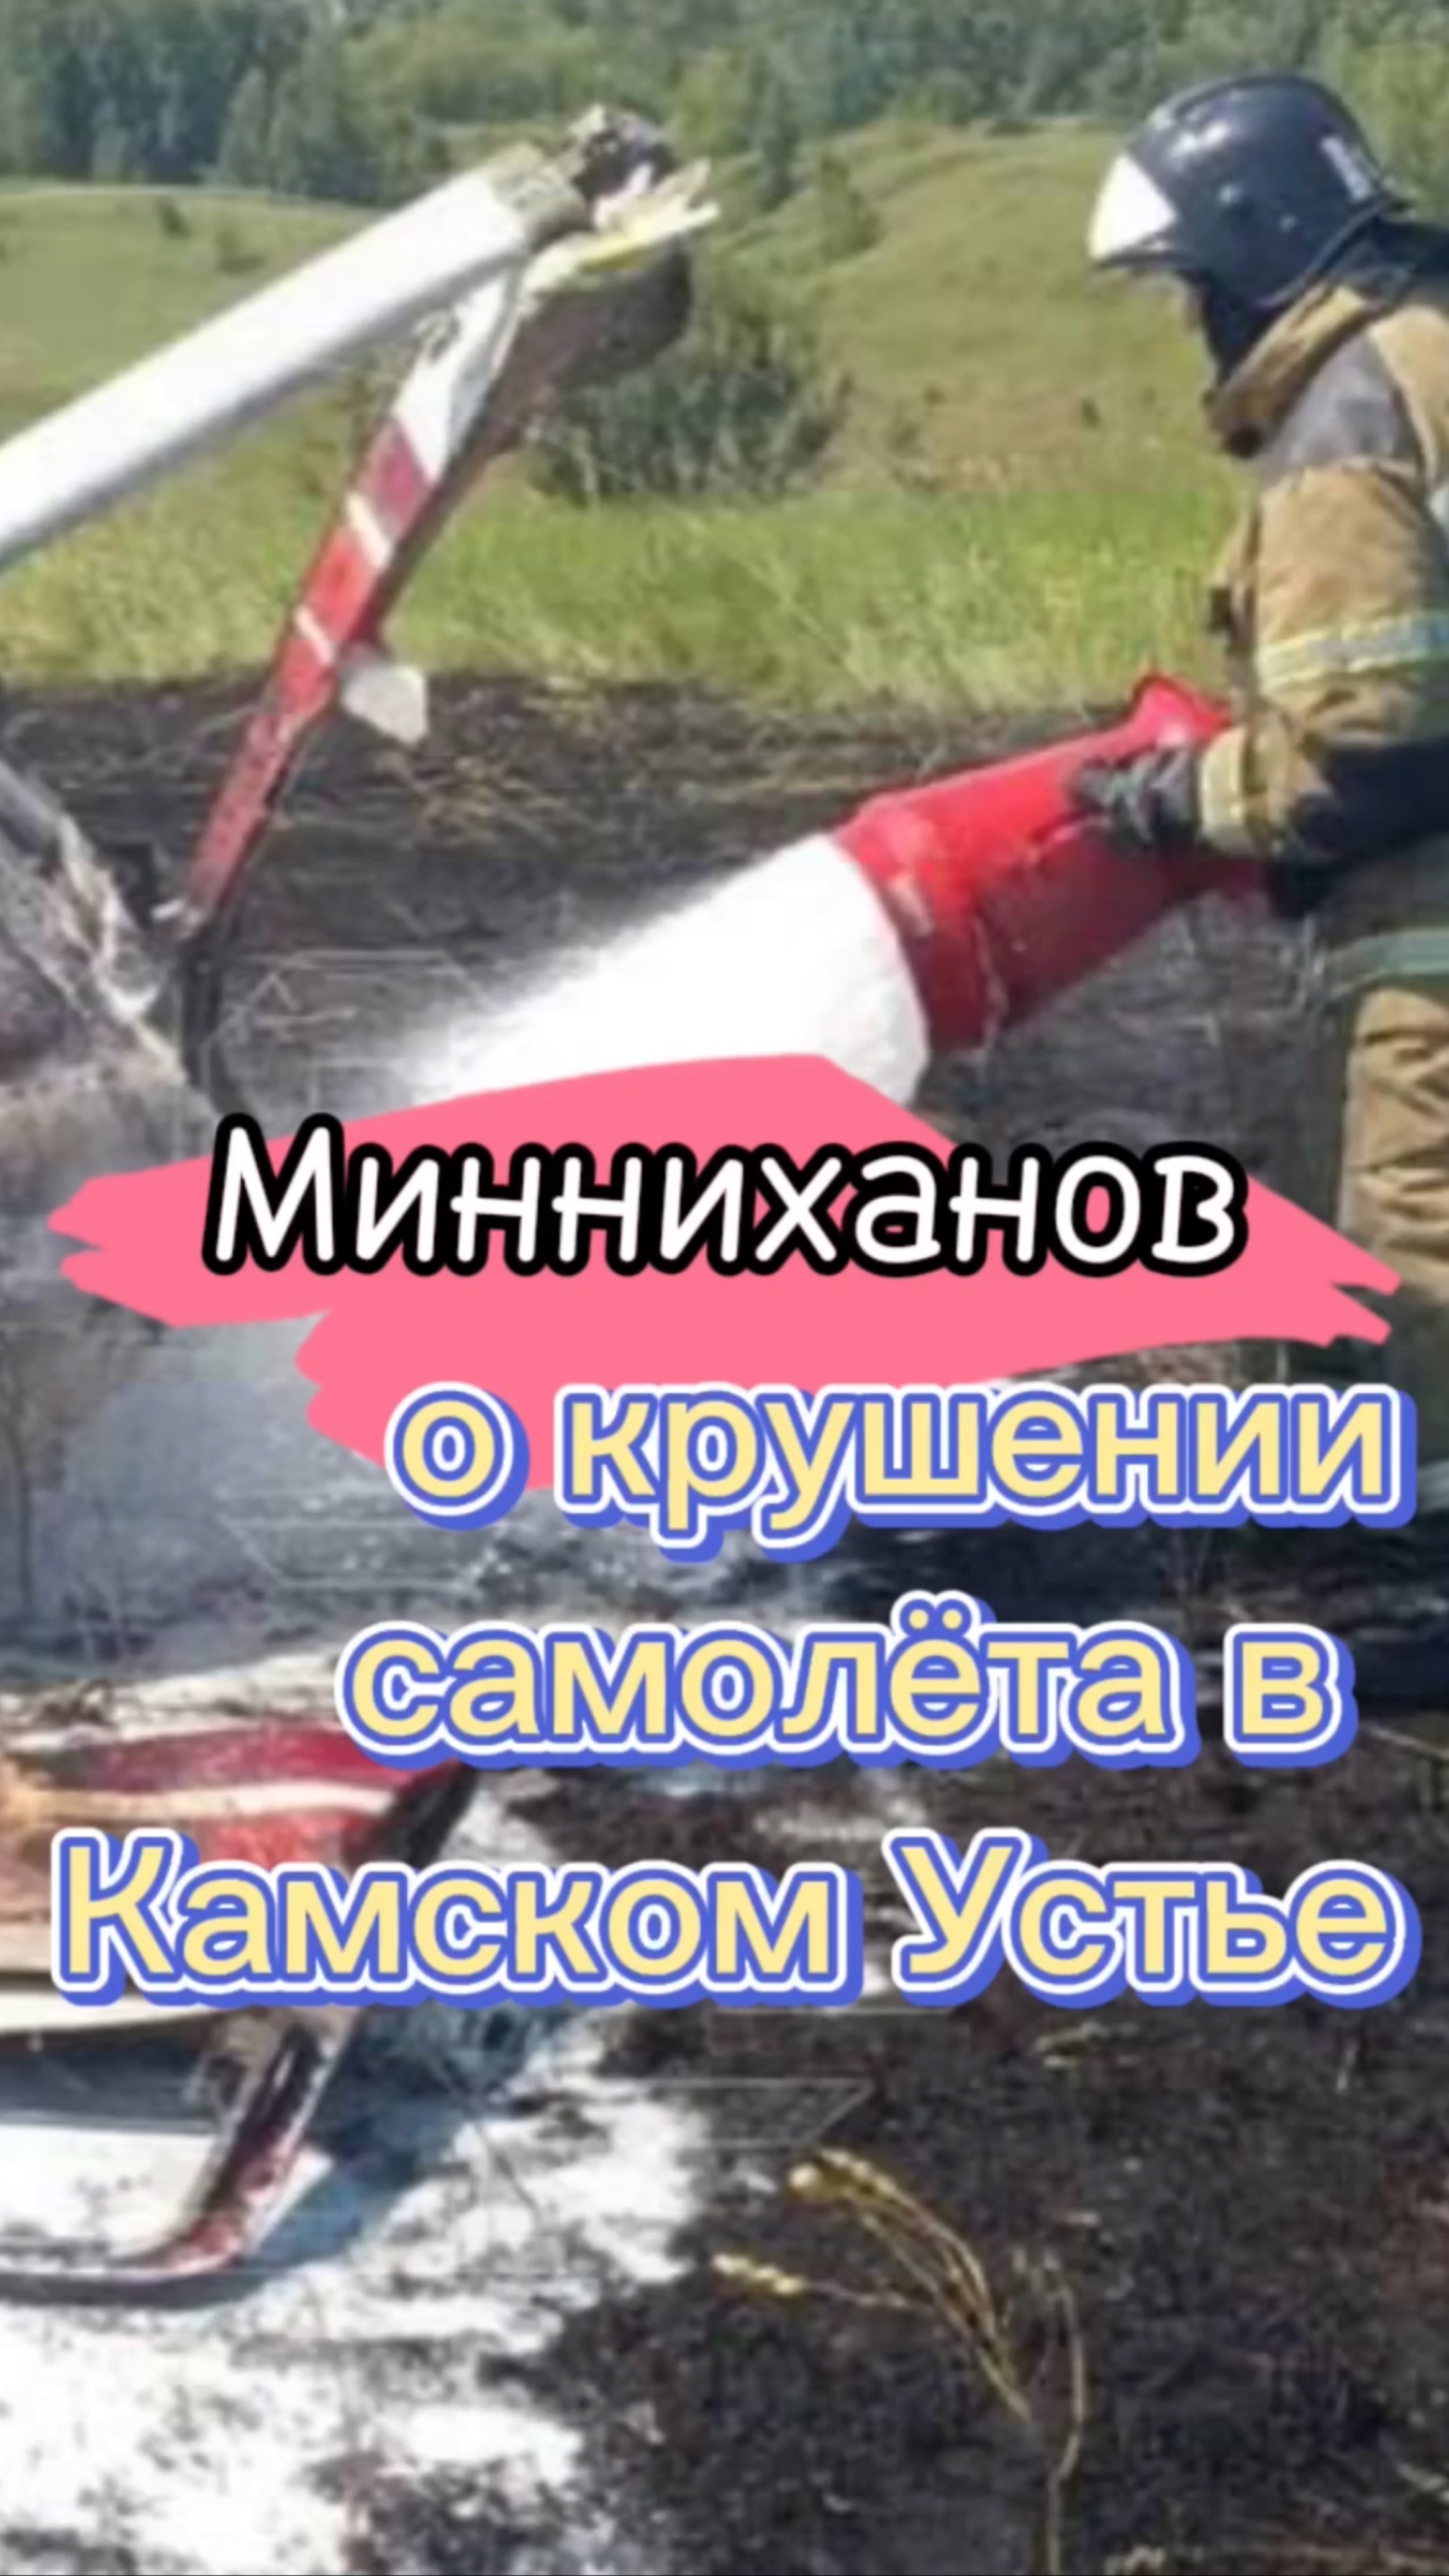 Минниханов о крушении самолета в Татарстане #Татарстан #Минниханов